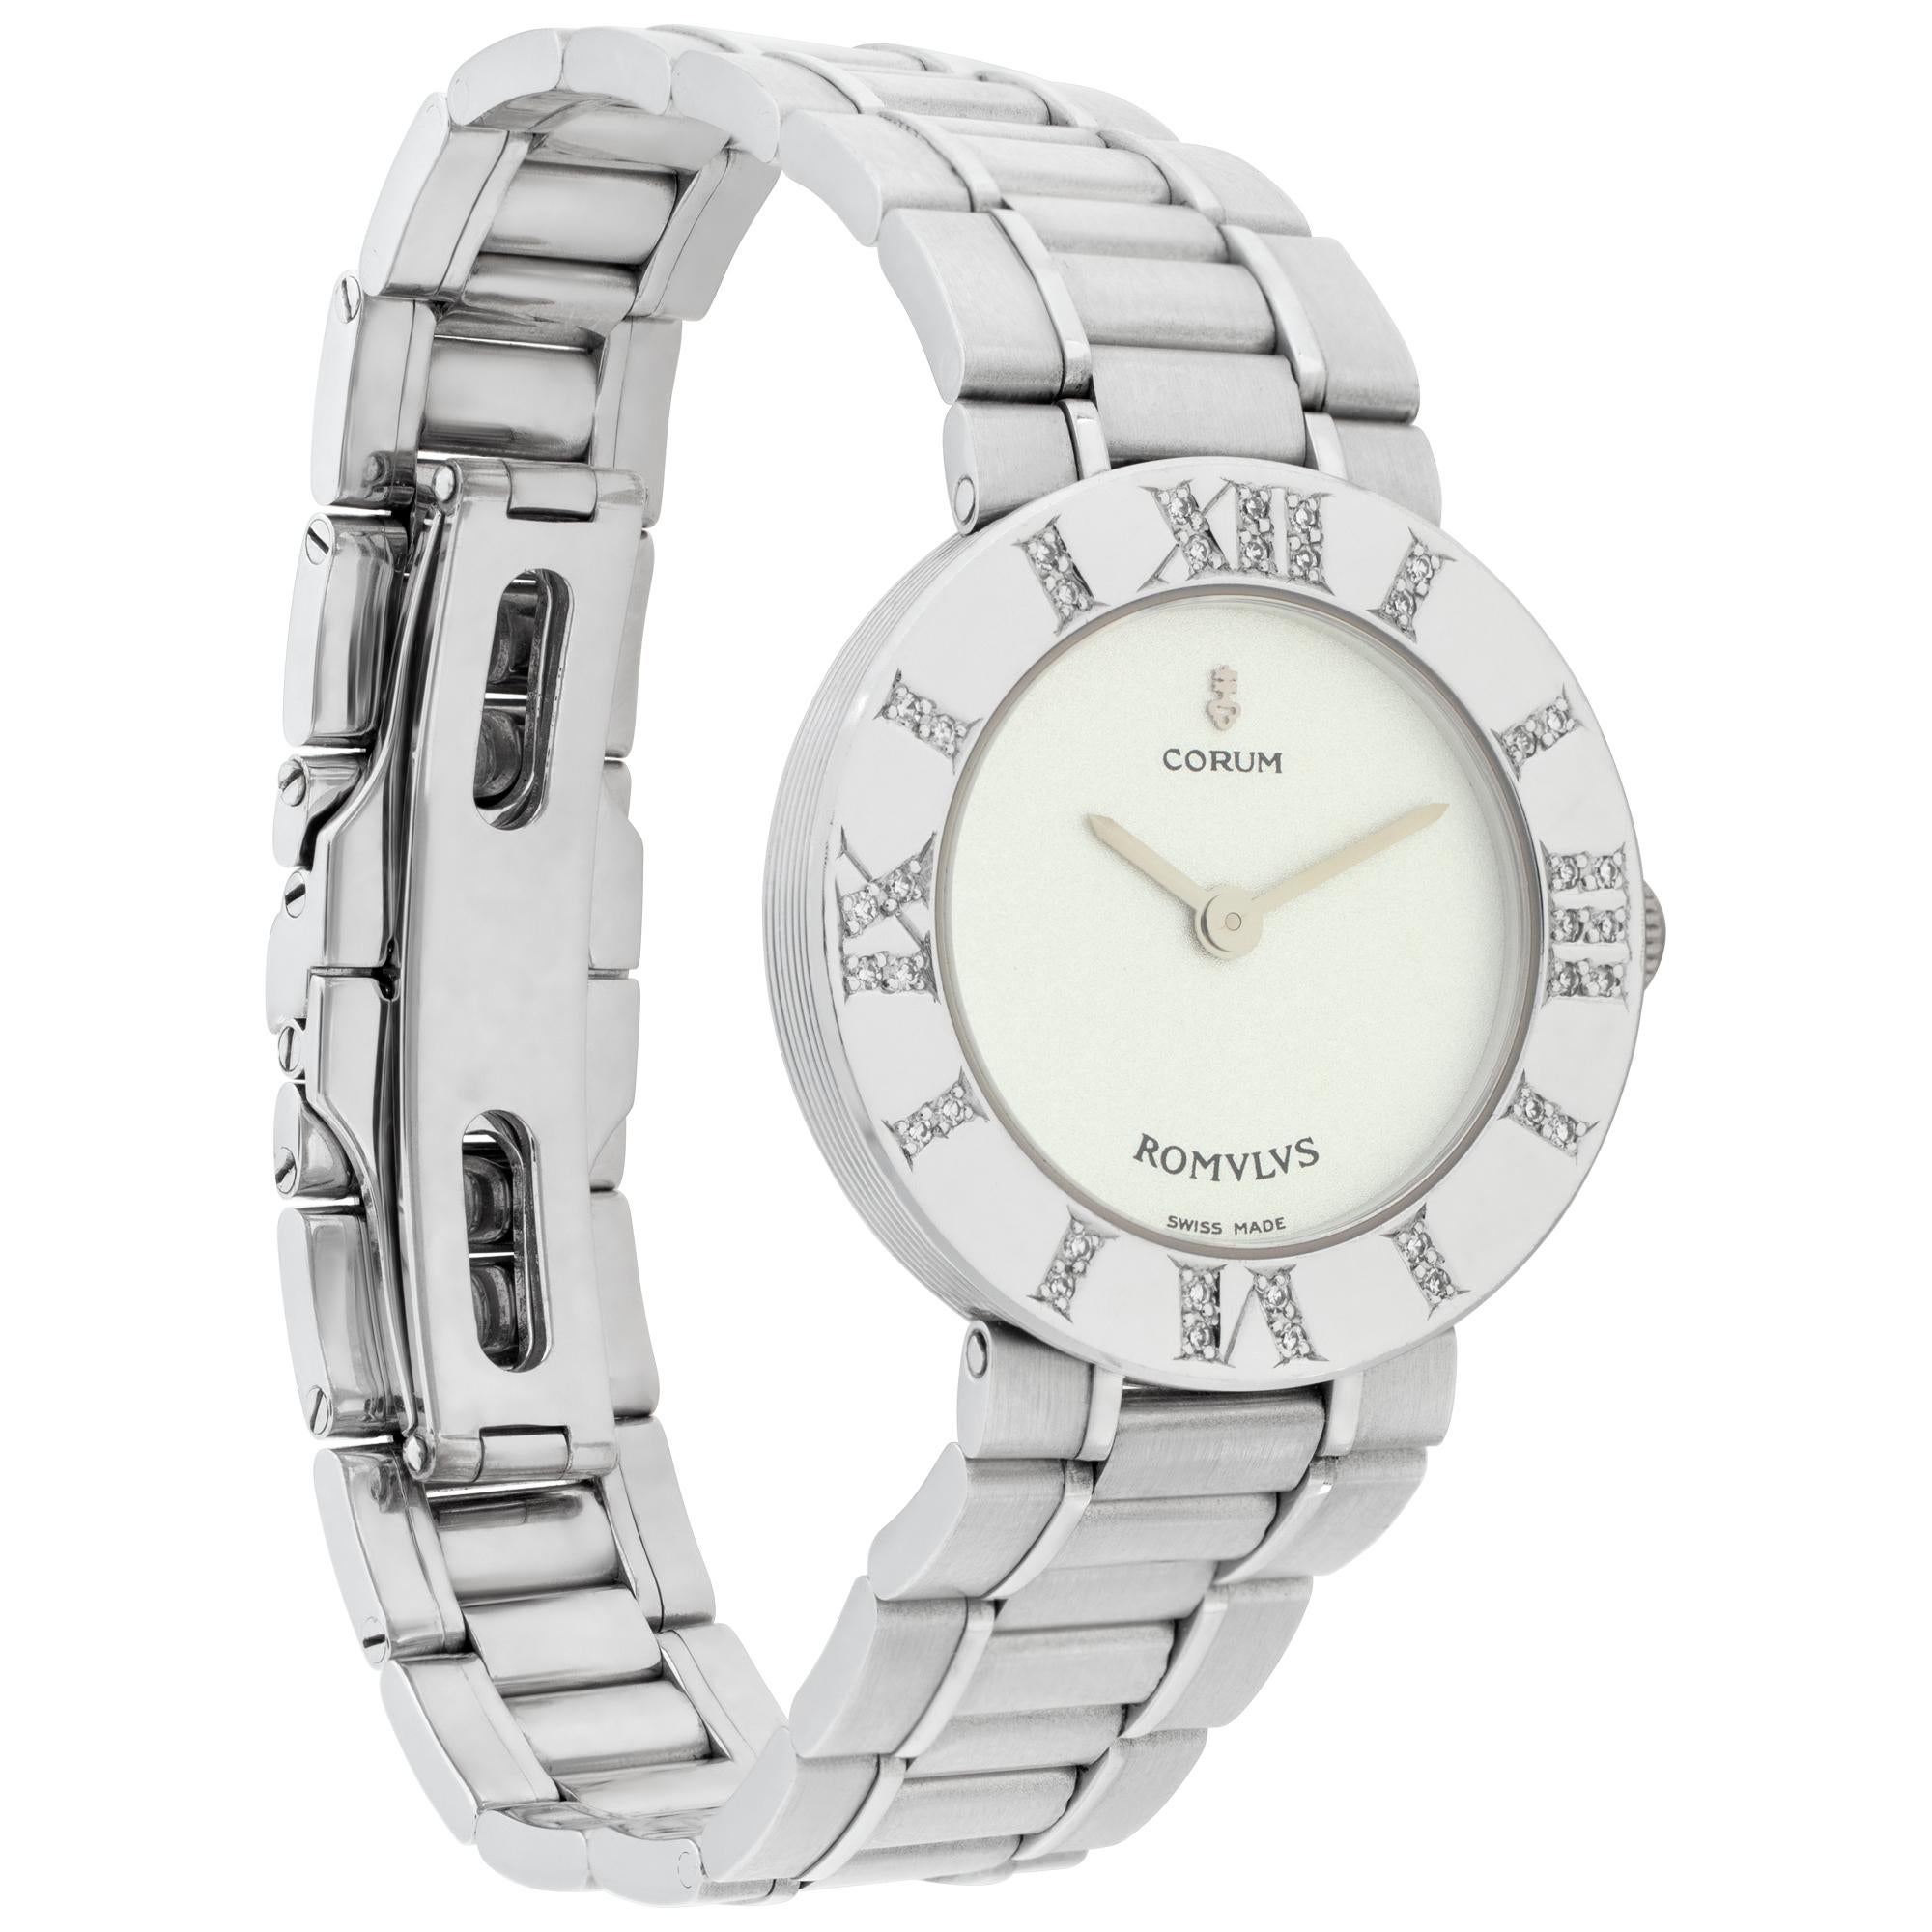 Corum Romvlvs 18k White Gold Wristwatch Ref 165 121 69 V400 In Excellent Condition For Sale In Surfside, FL